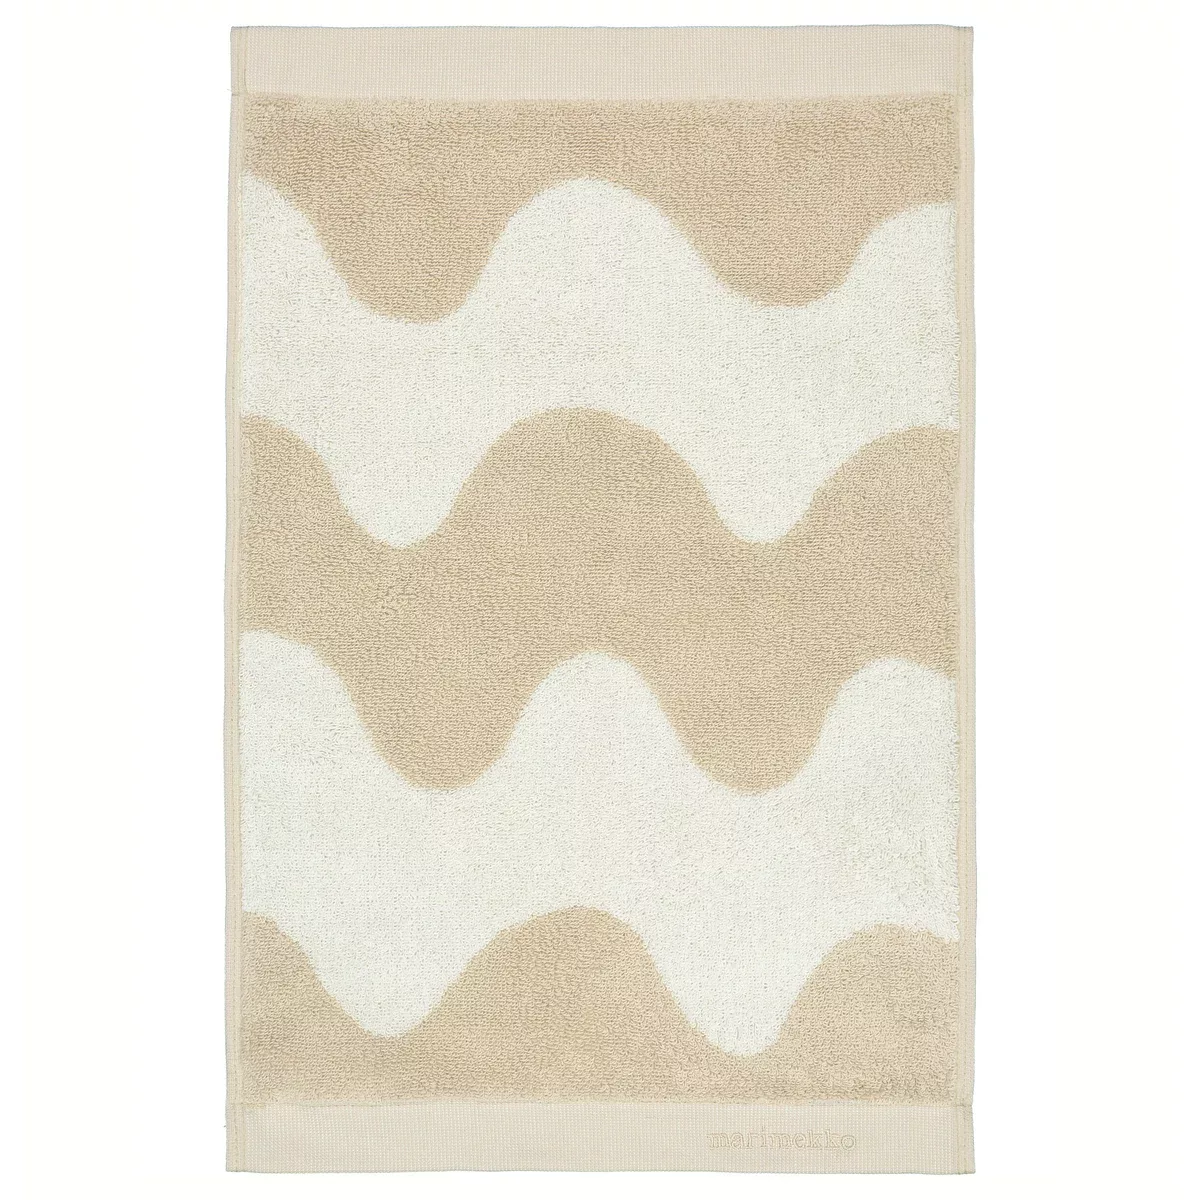 Lokki Handtuch beige-weiß 30 x 50cm günstig online kaufen